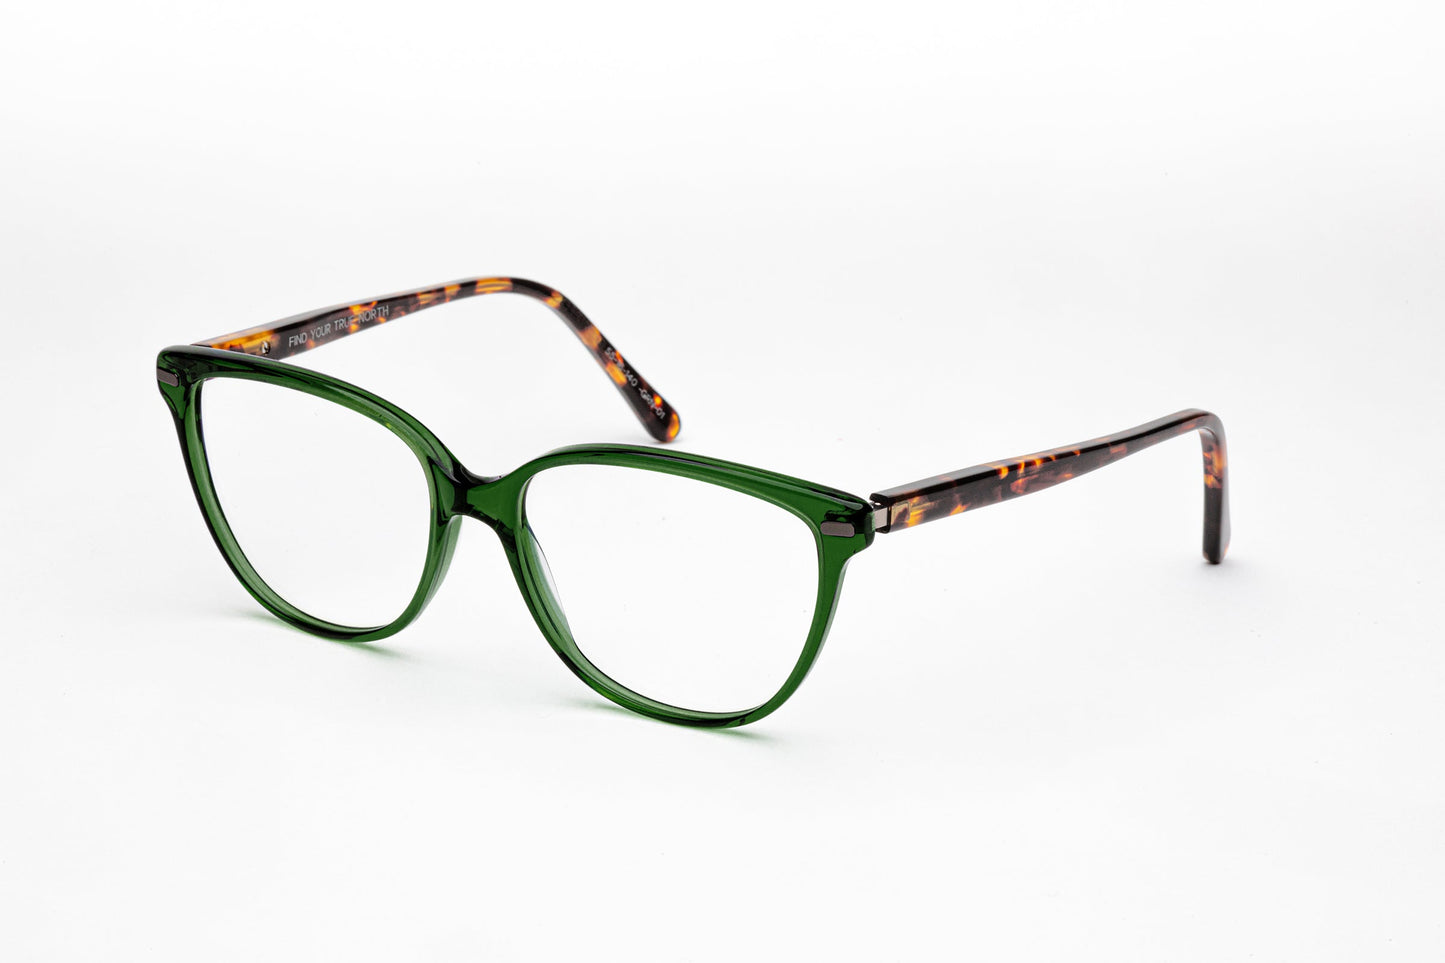 Angled View - The Humanist 3 | Oval Cat Eye Designer Prescription Eyeglasses – Green & Tortoiseshell Stems